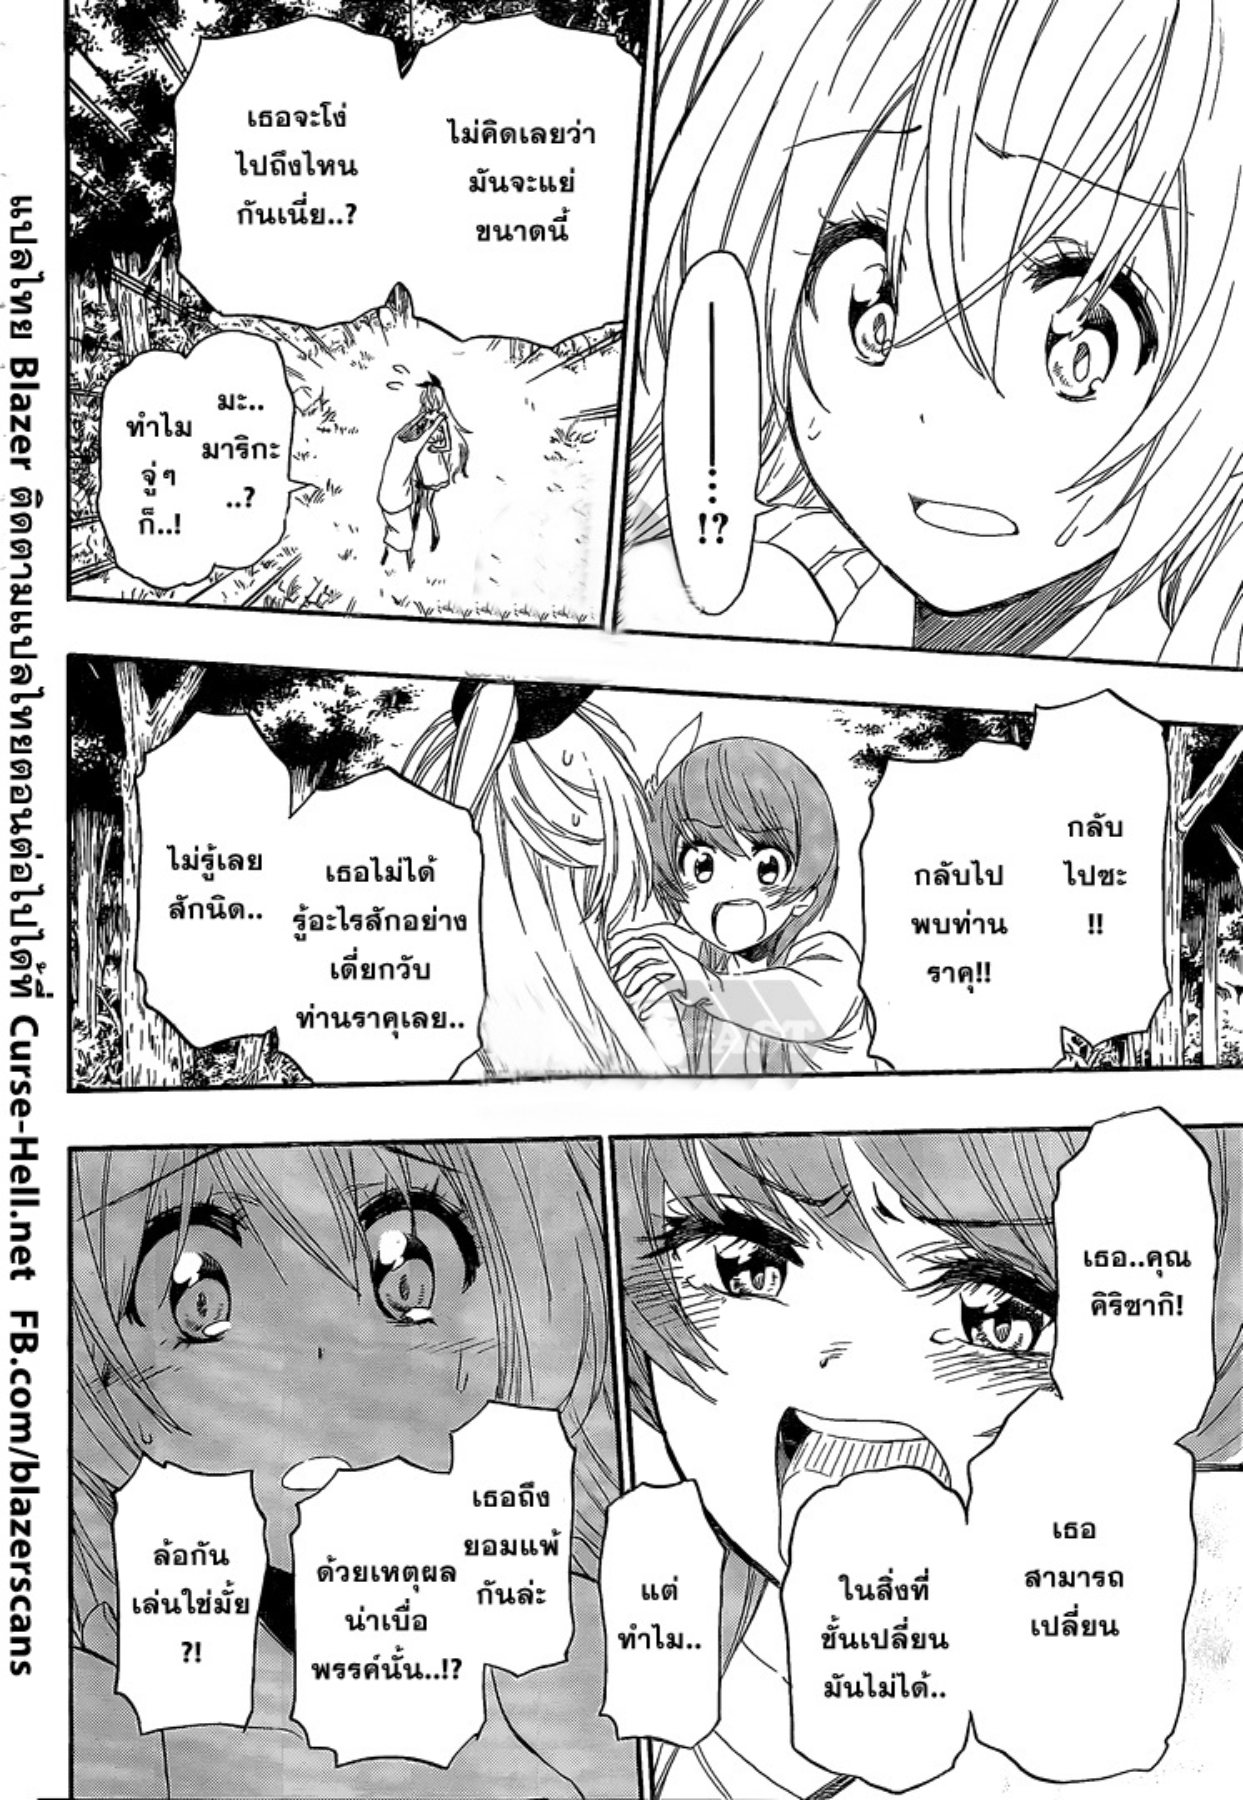 Nisekoi ตอนที่ 224 Romance Manga อ่านการ์ตูนโรแมนซ์ มังงะรักโรแมนติก แปลไทย 9845